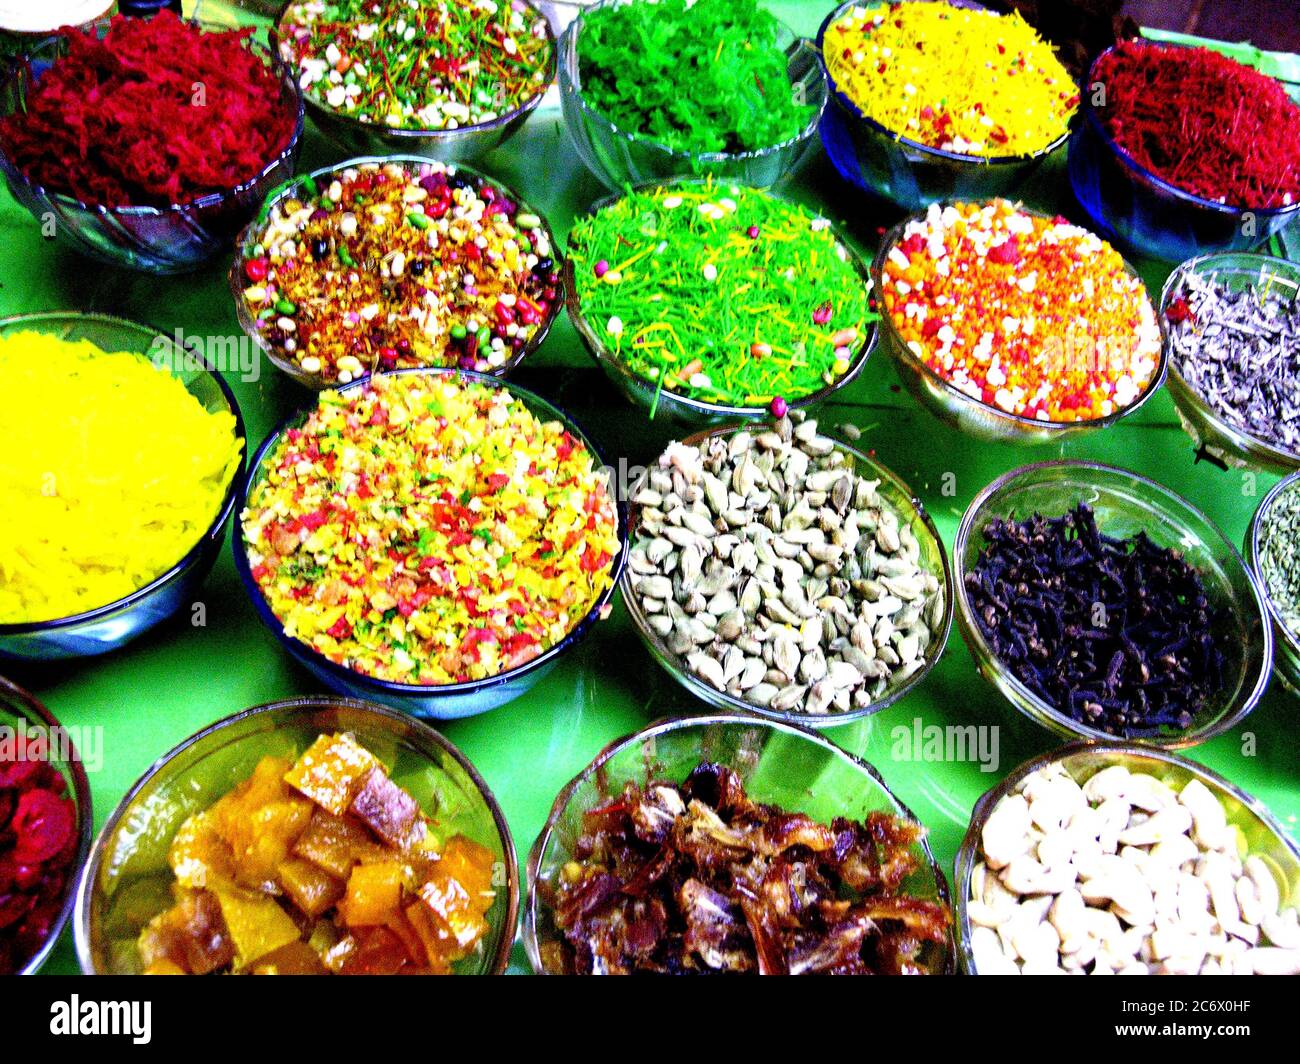 Ingrédients de paan ou de feuille de bétel, un chew ou un quid populaire, dans un magasin. Kolkata, Inde, 18 octobre 2007. Banque D'Images